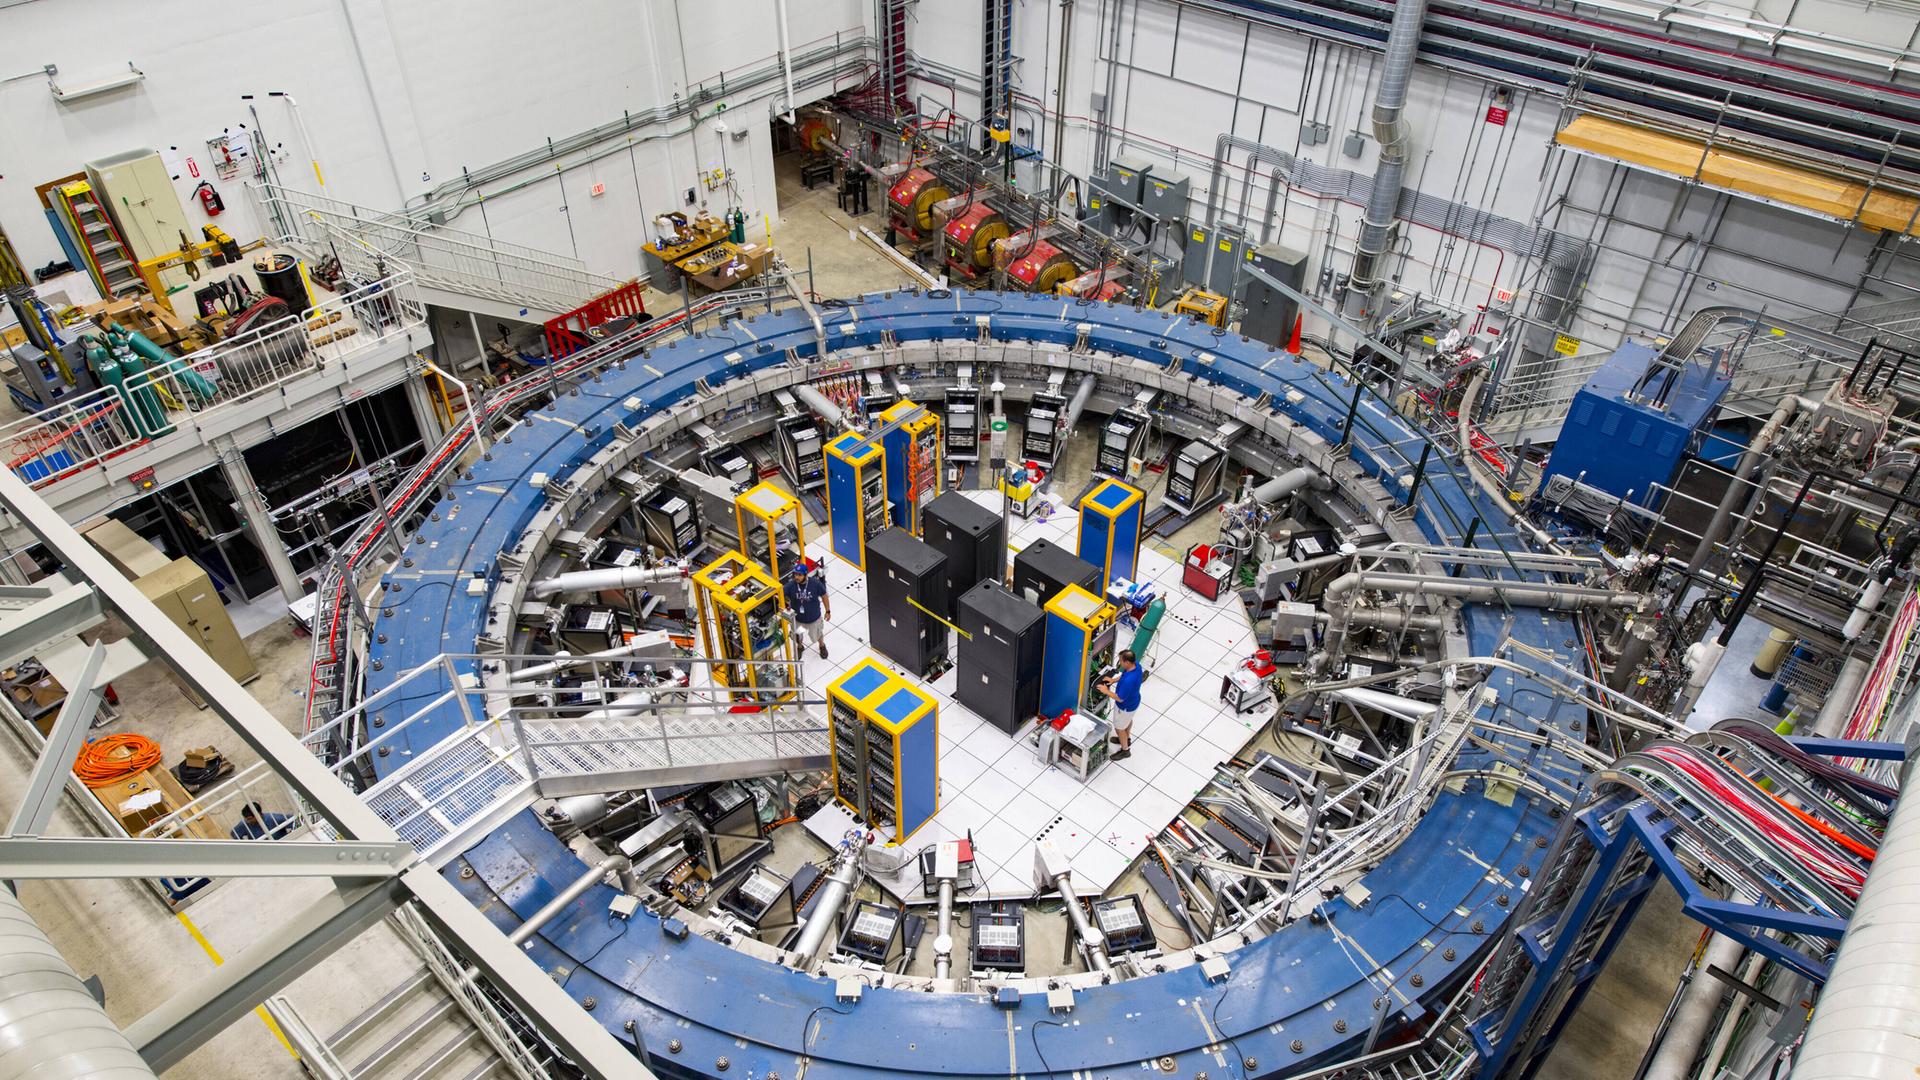 Der Teilchenbeschleuniger Myon-g-2-Ring inmitten anderer technischer Geräte in einer Halle.
